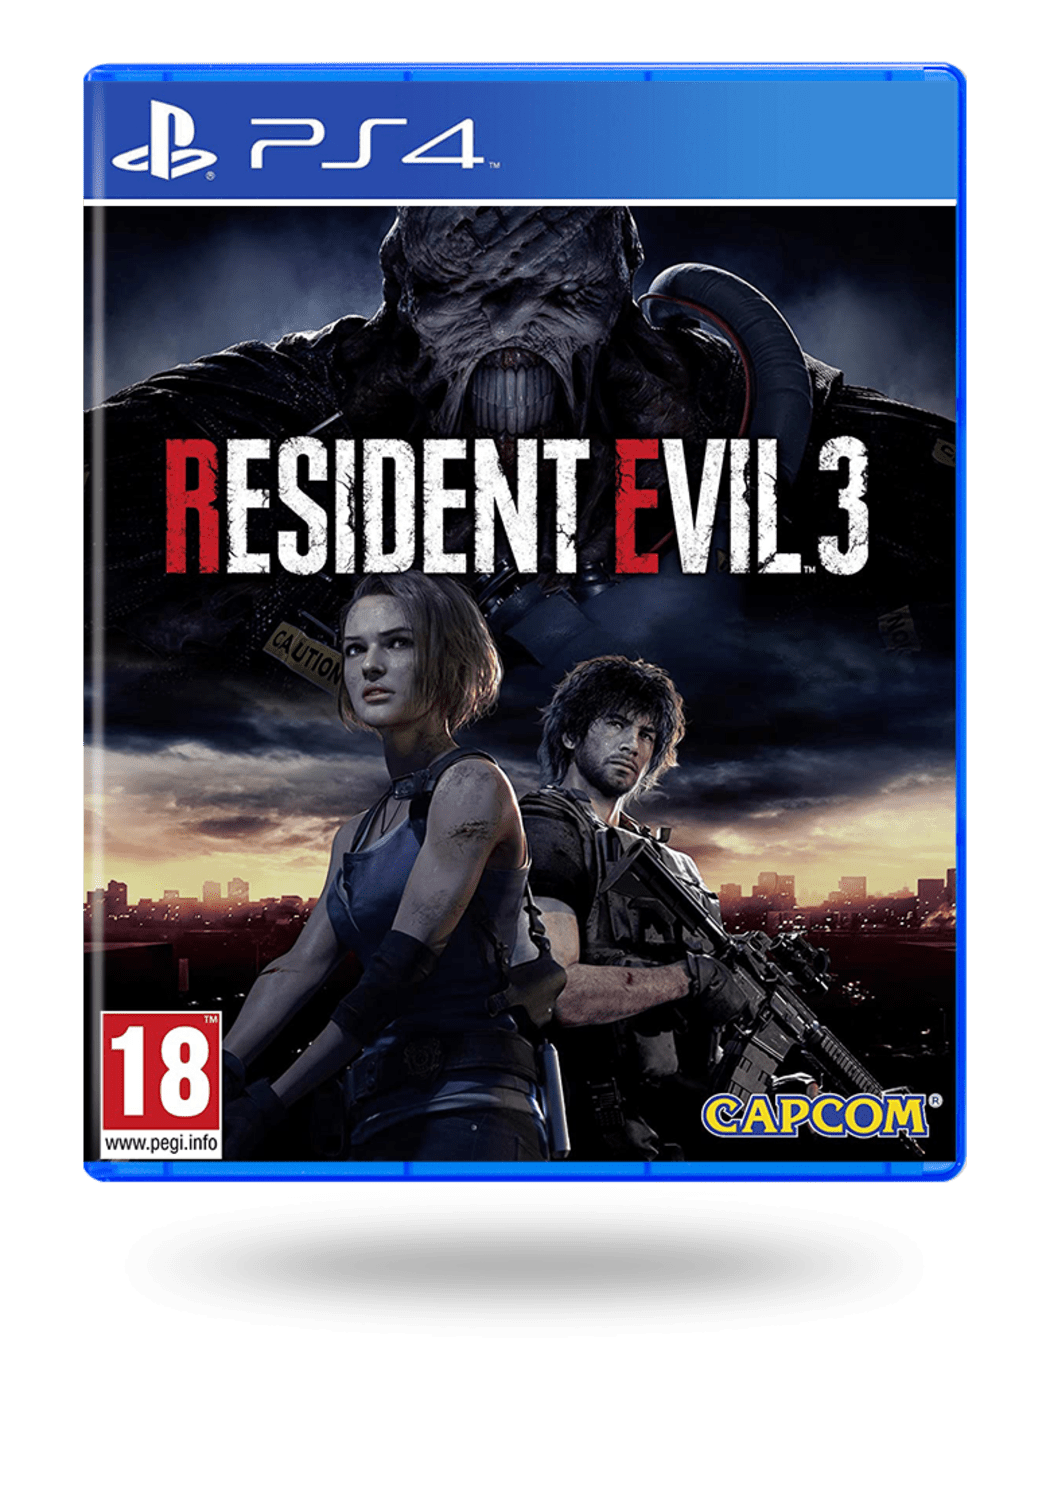 Convencional Cantina Príncipe Comprar Resident Evil 2 Steelbook Edition segunda mano de PlayStation 4 al  Mejor Precio | ENEBA